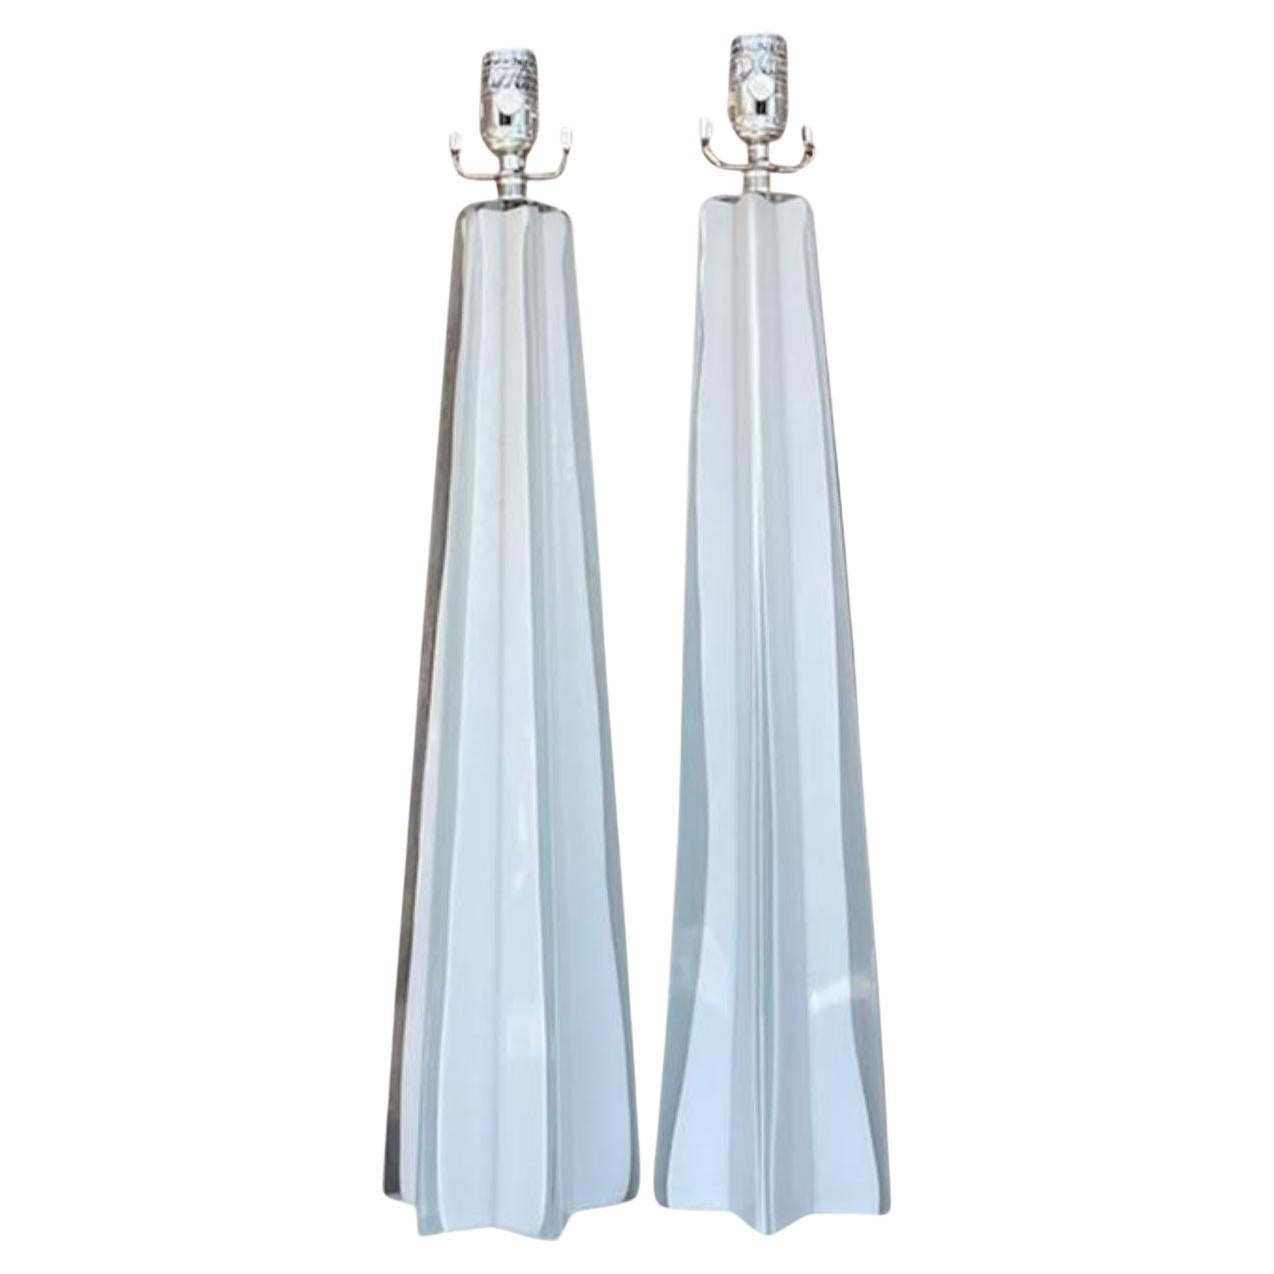 Vintage Contemporary Glass Star Lampen - ein Paar